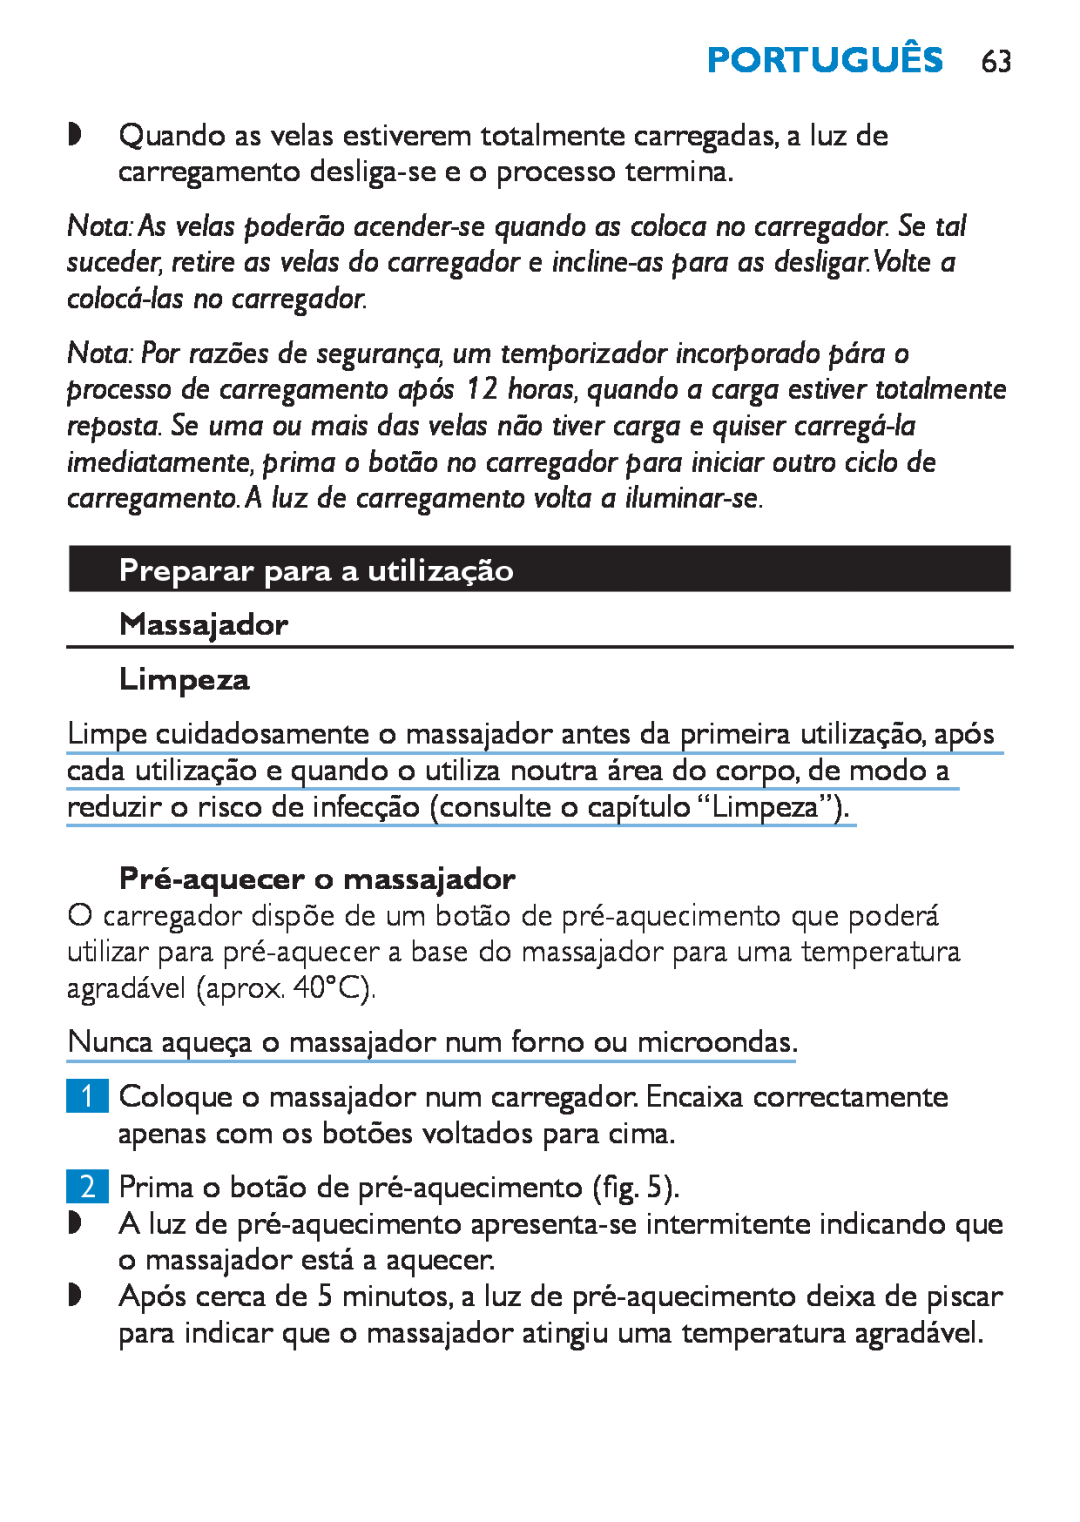 Philips HF8430 manual Preparar para a utilização, Massajador Limpeza, Pré-aquecero massajador, Português 